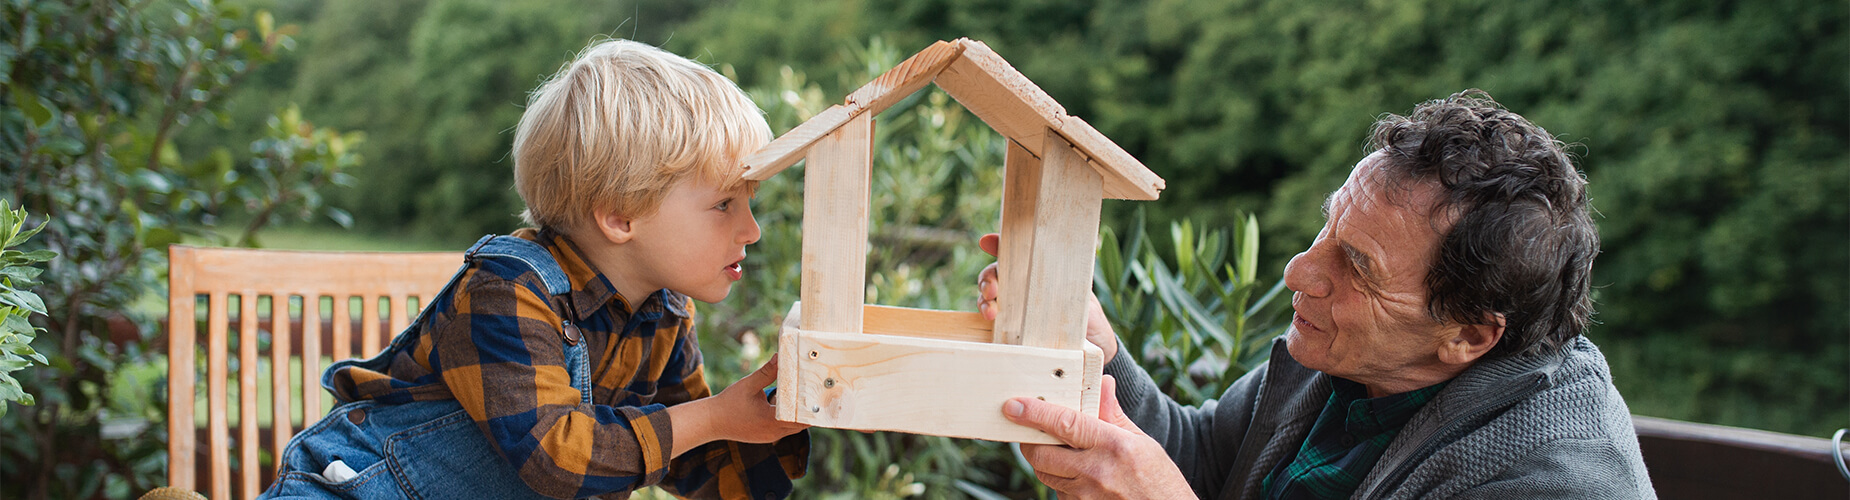 Mann und Kind halten Vogelhaus